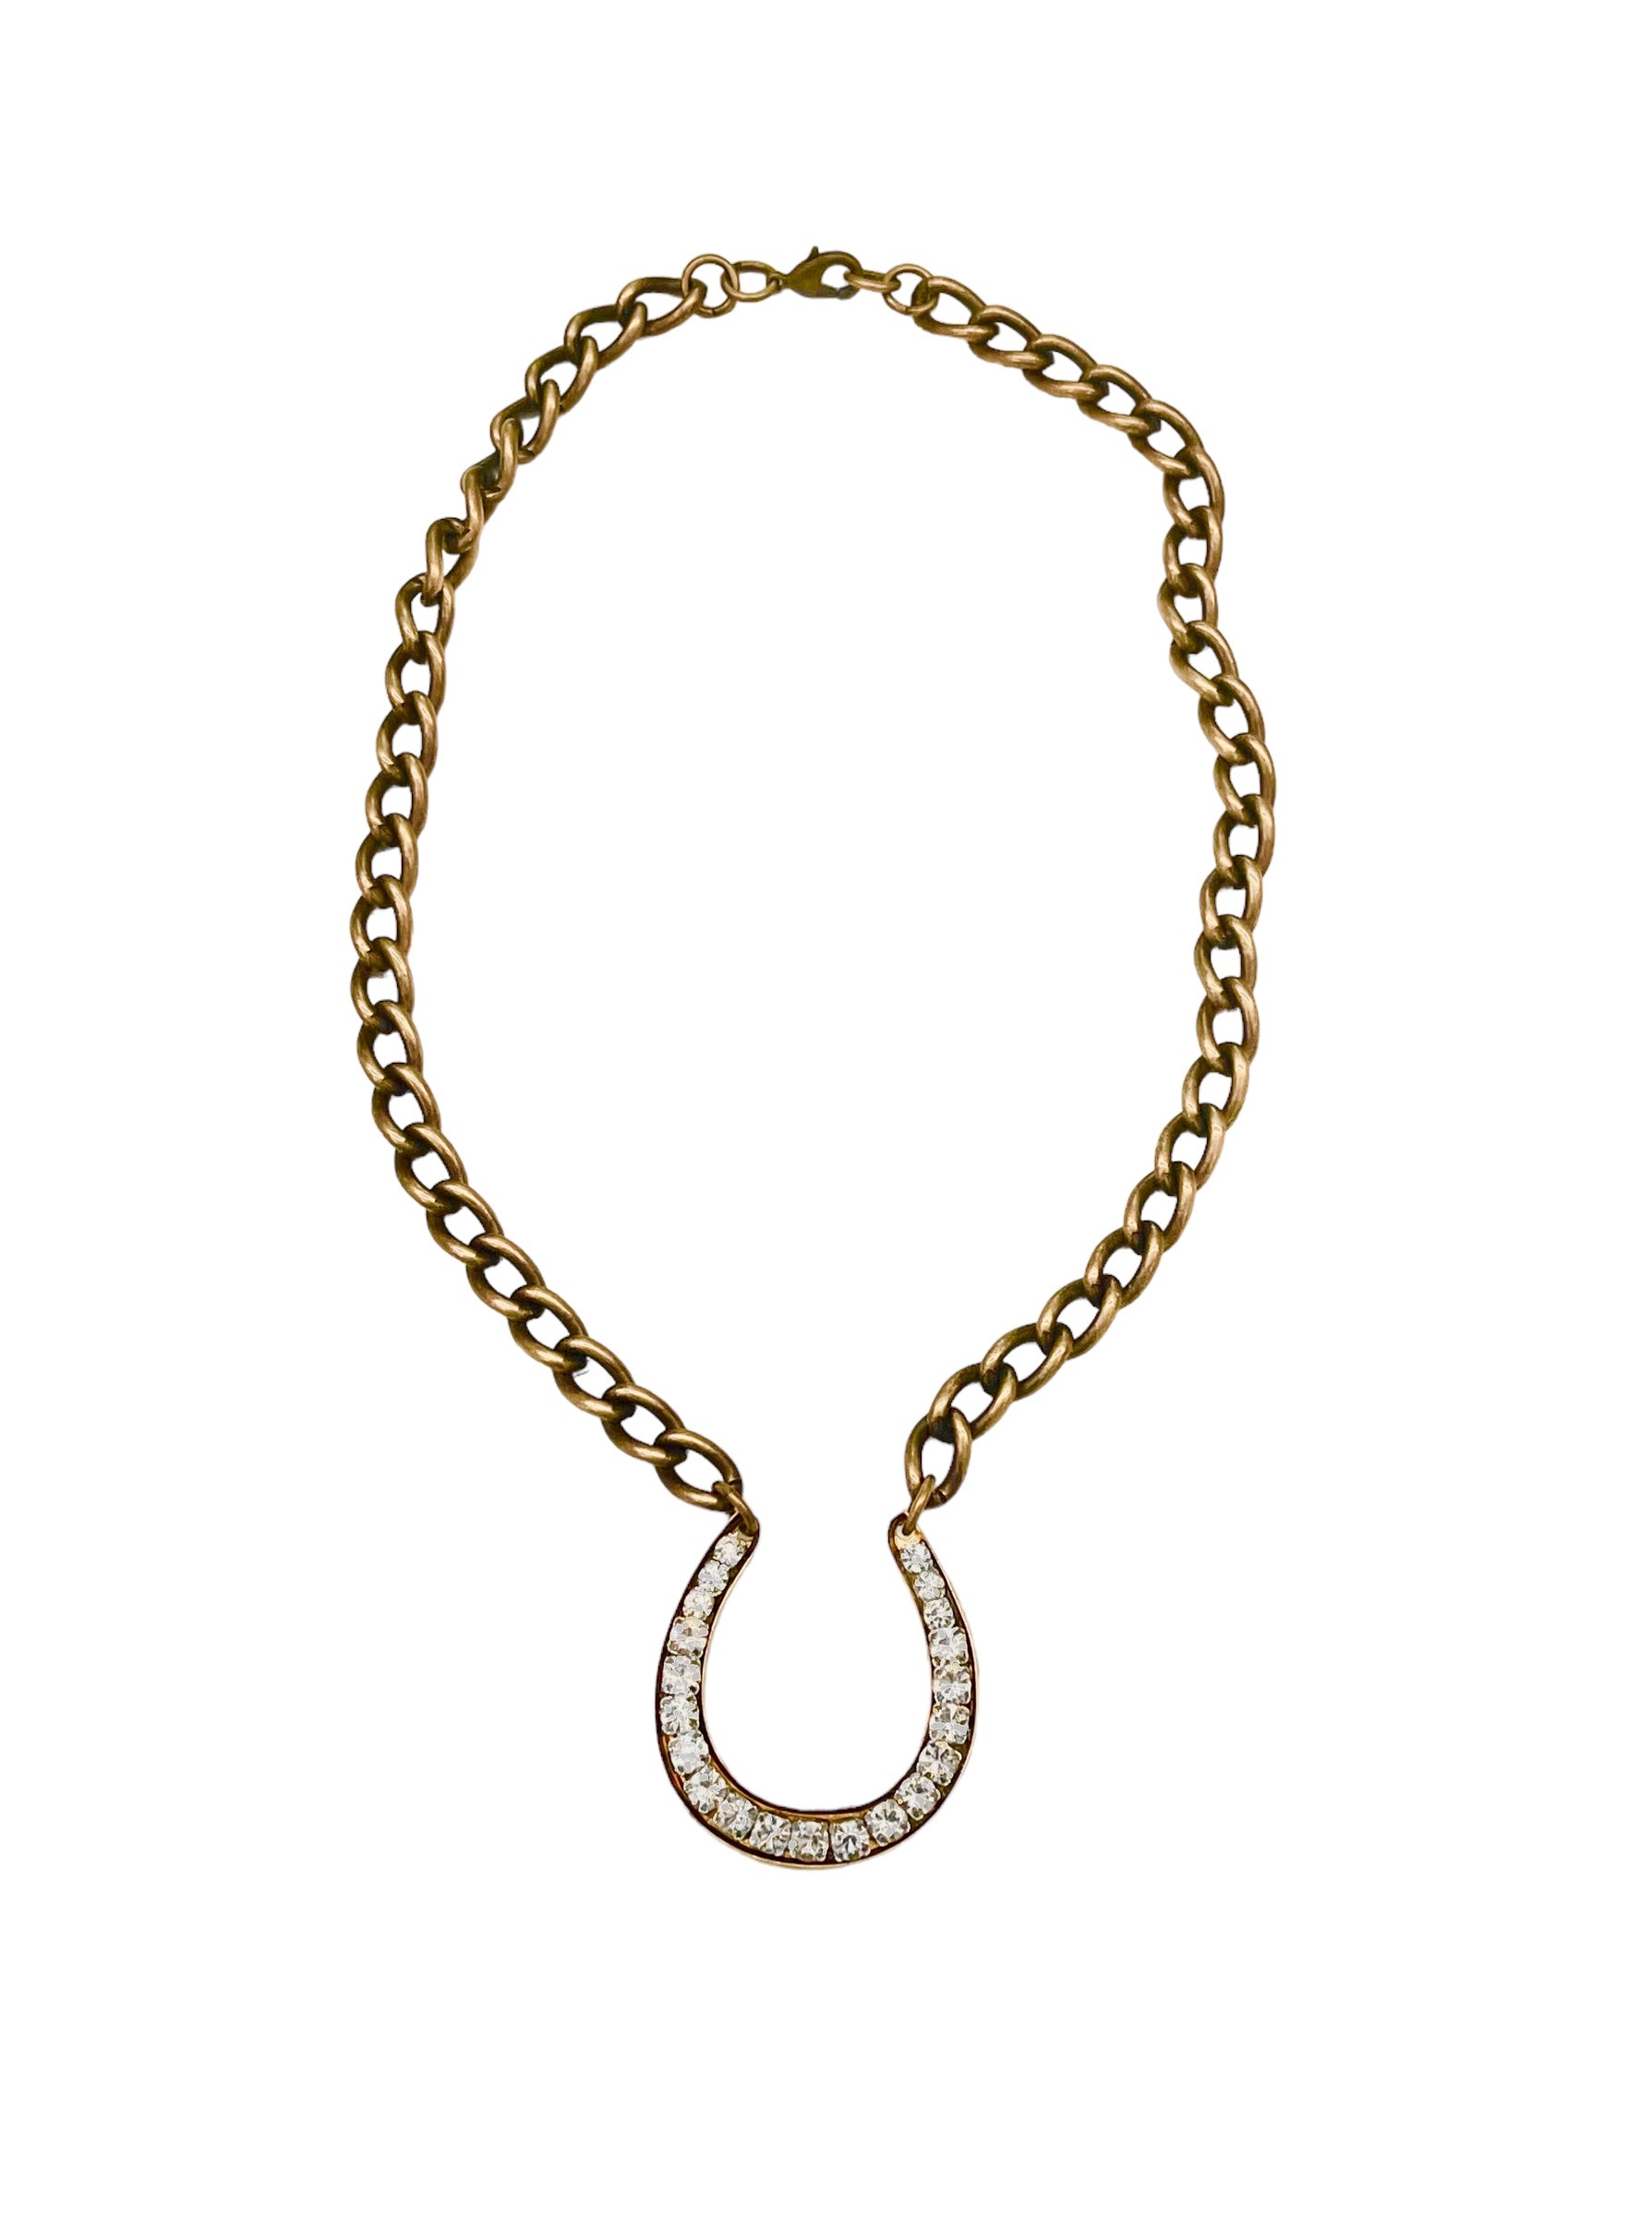 Jeweled Horseshoe Necklace on Chunky Chain